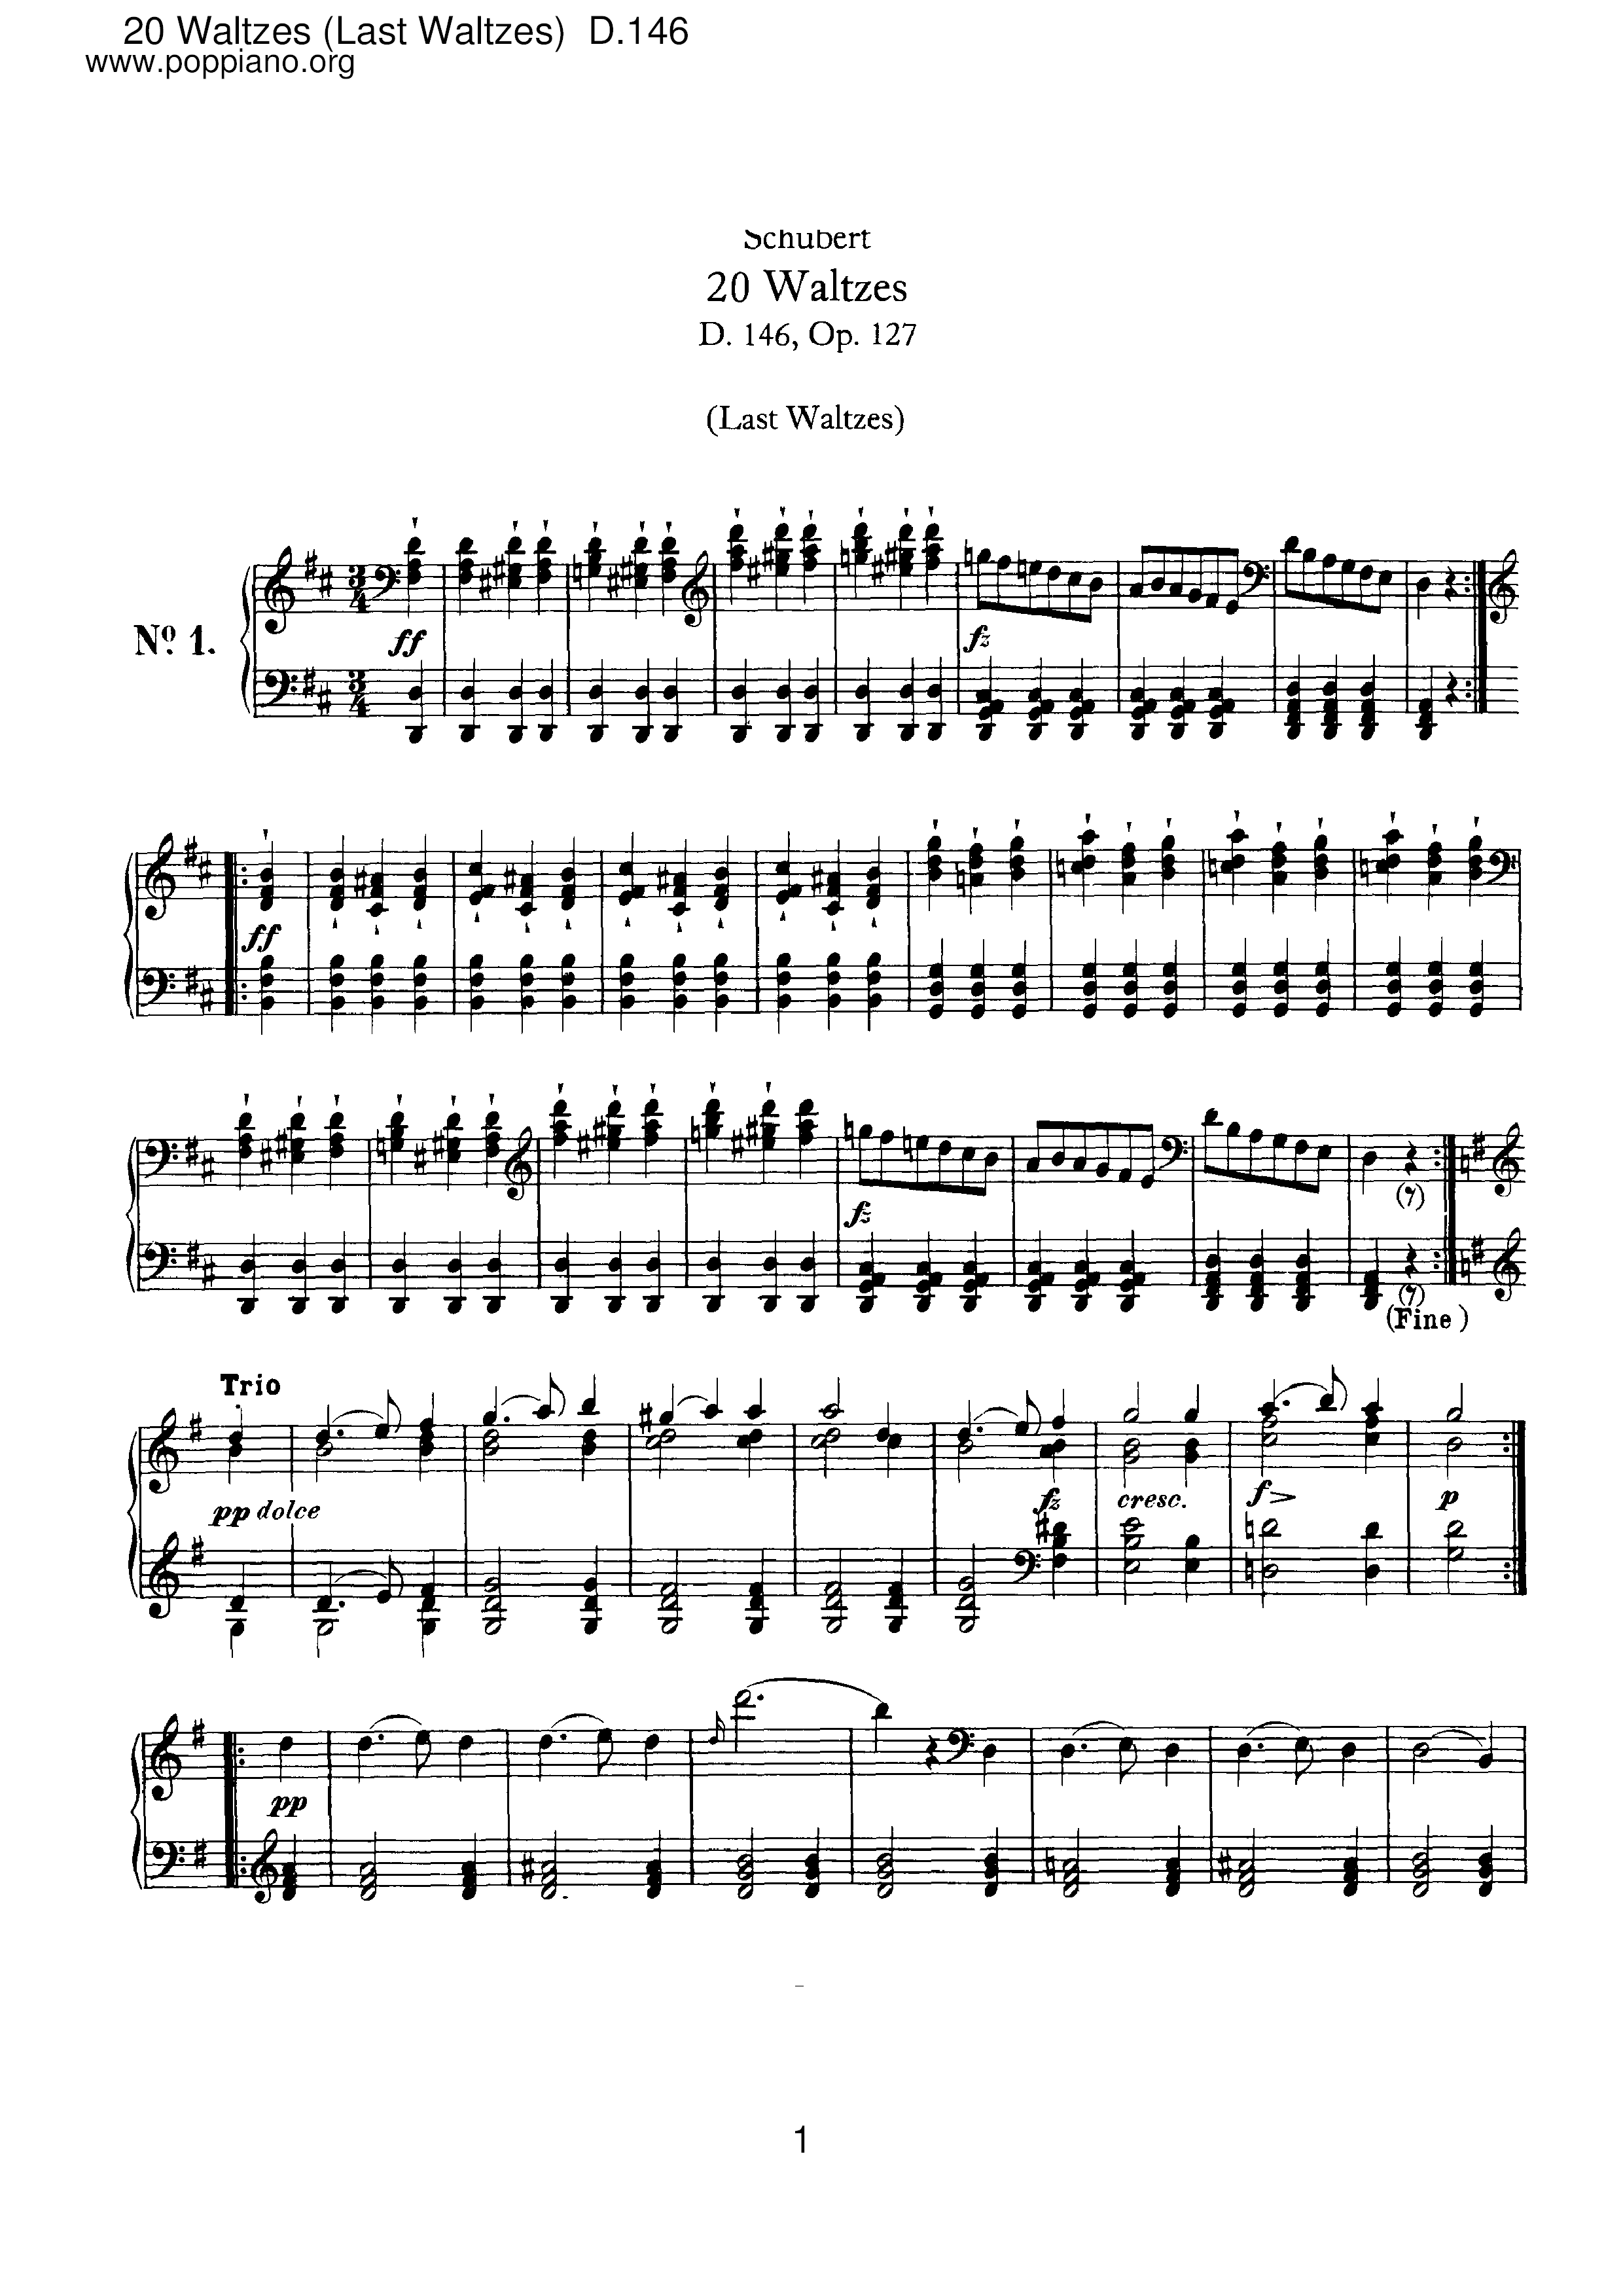 20 Waltzes (Last Waltzes), D.146 (Op.127) Score